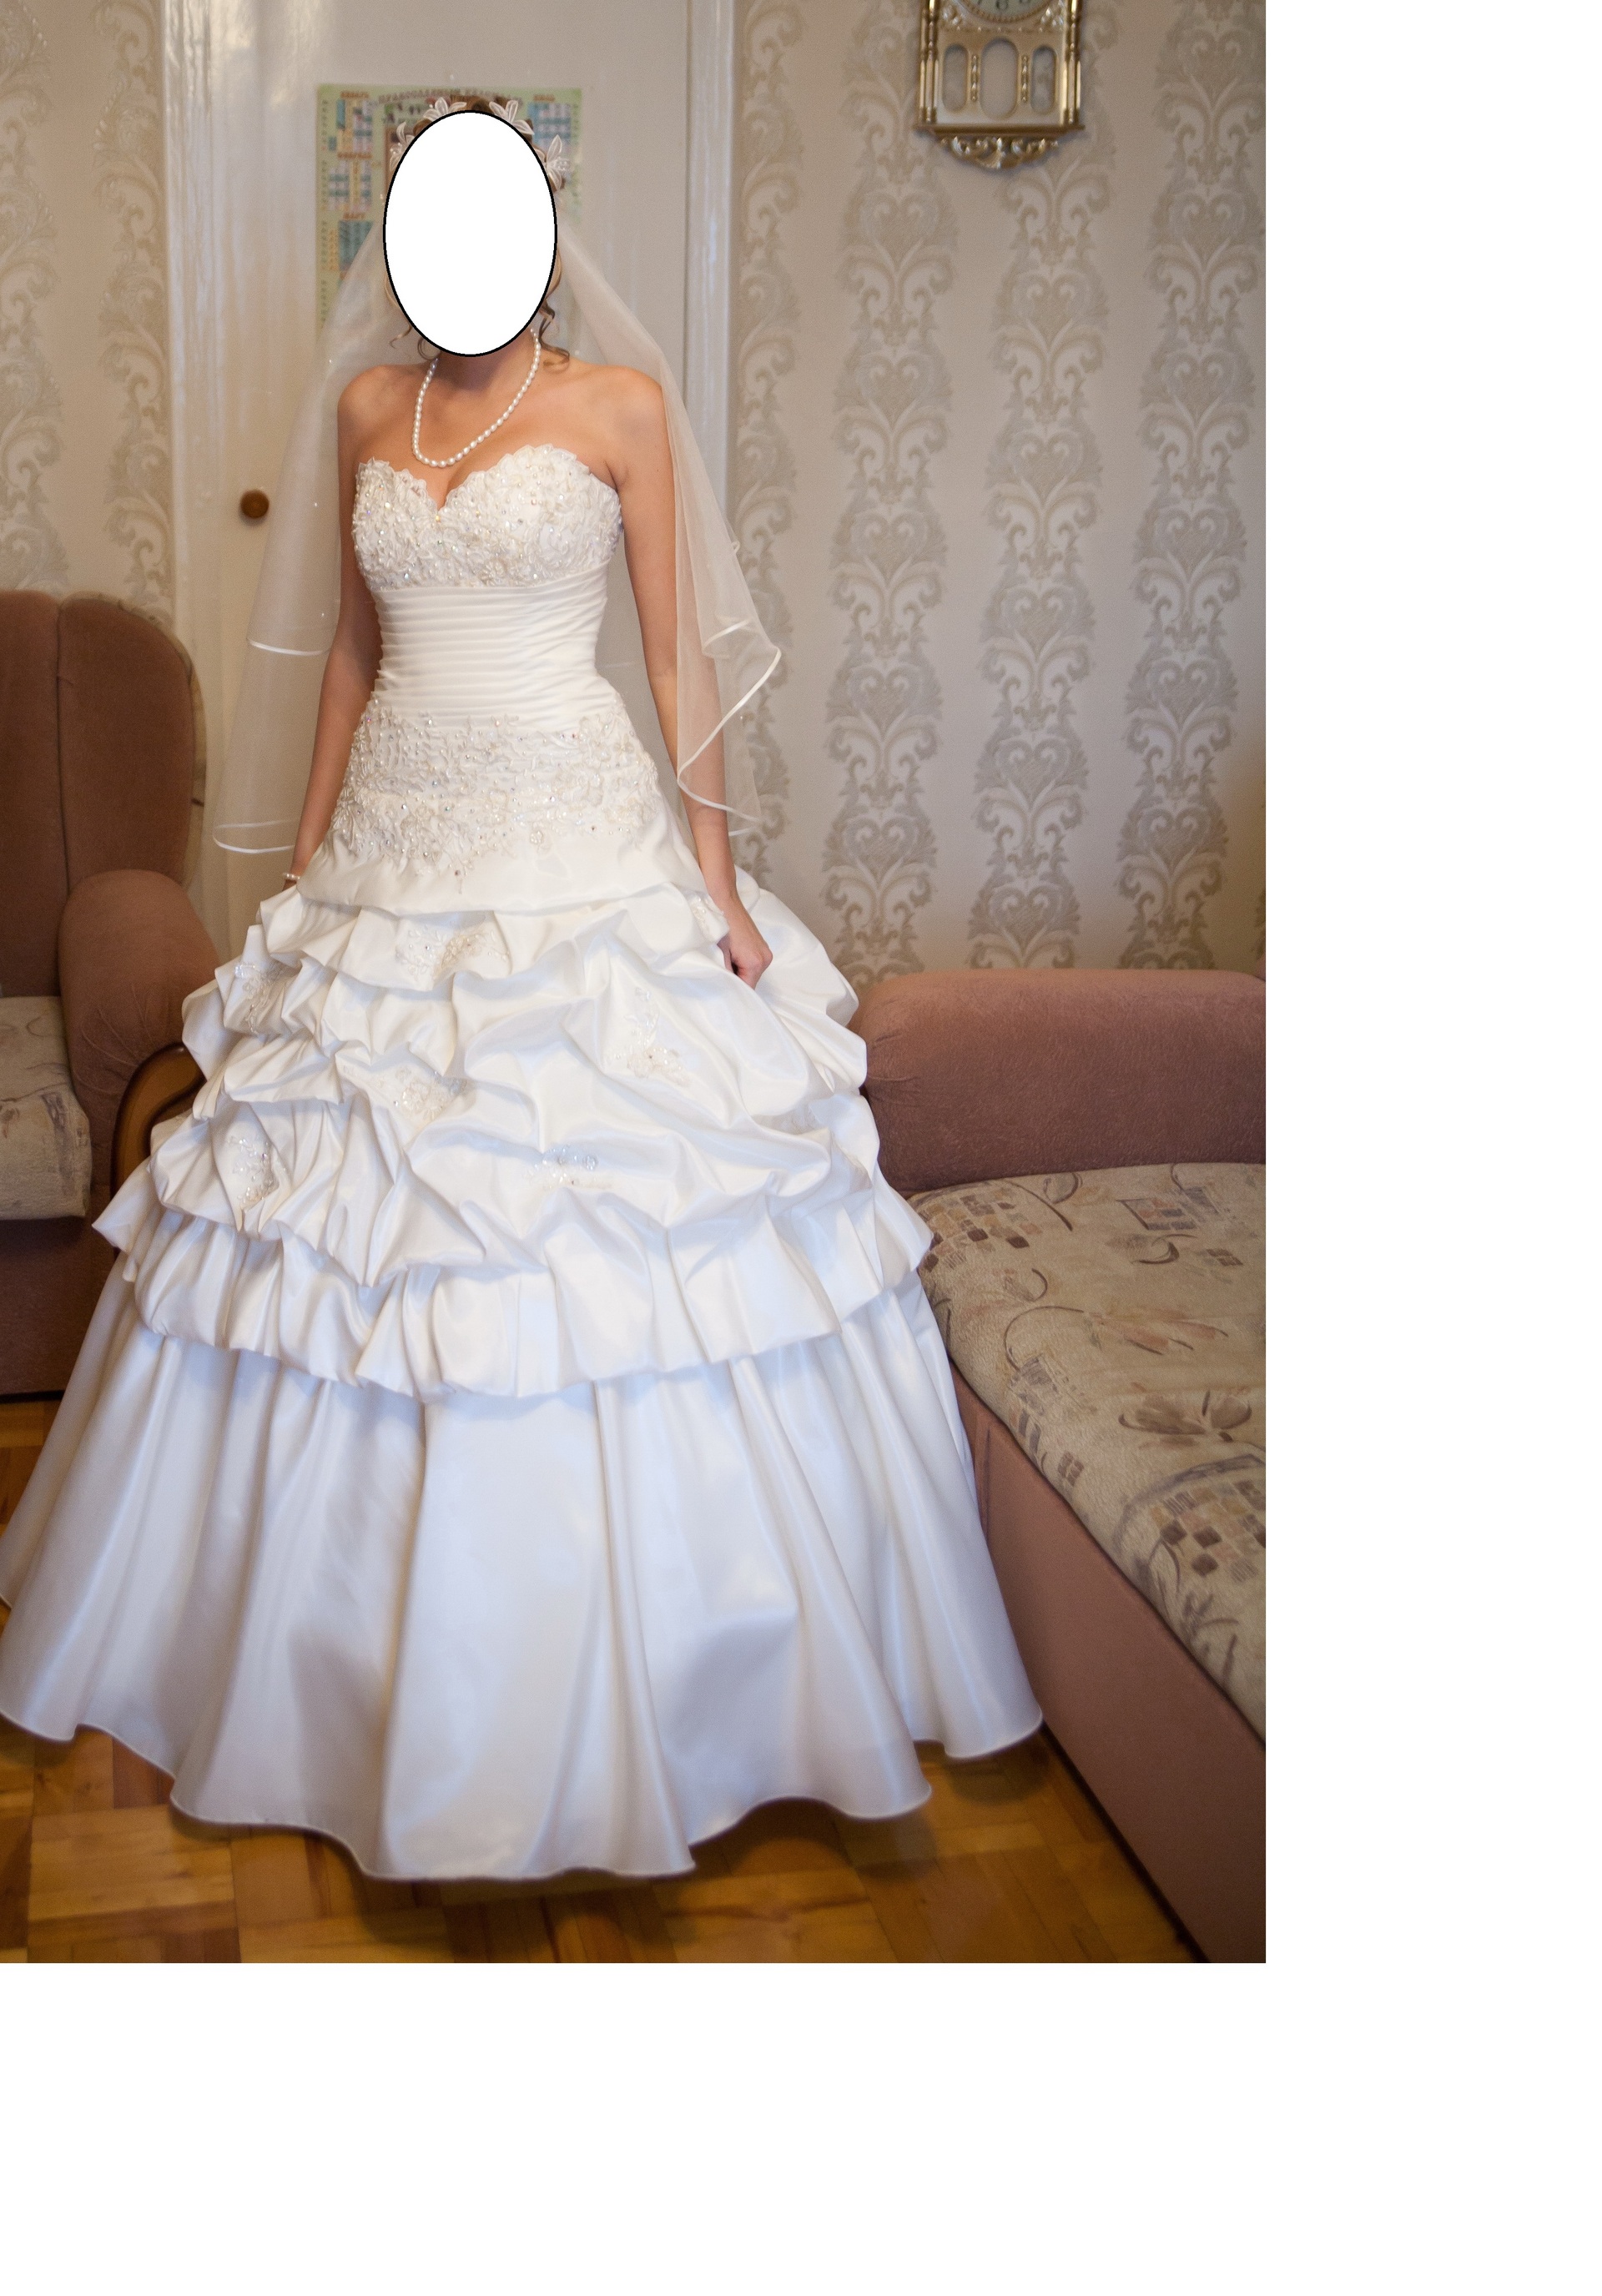 Недорогие Свадебные Платья Тула Цены